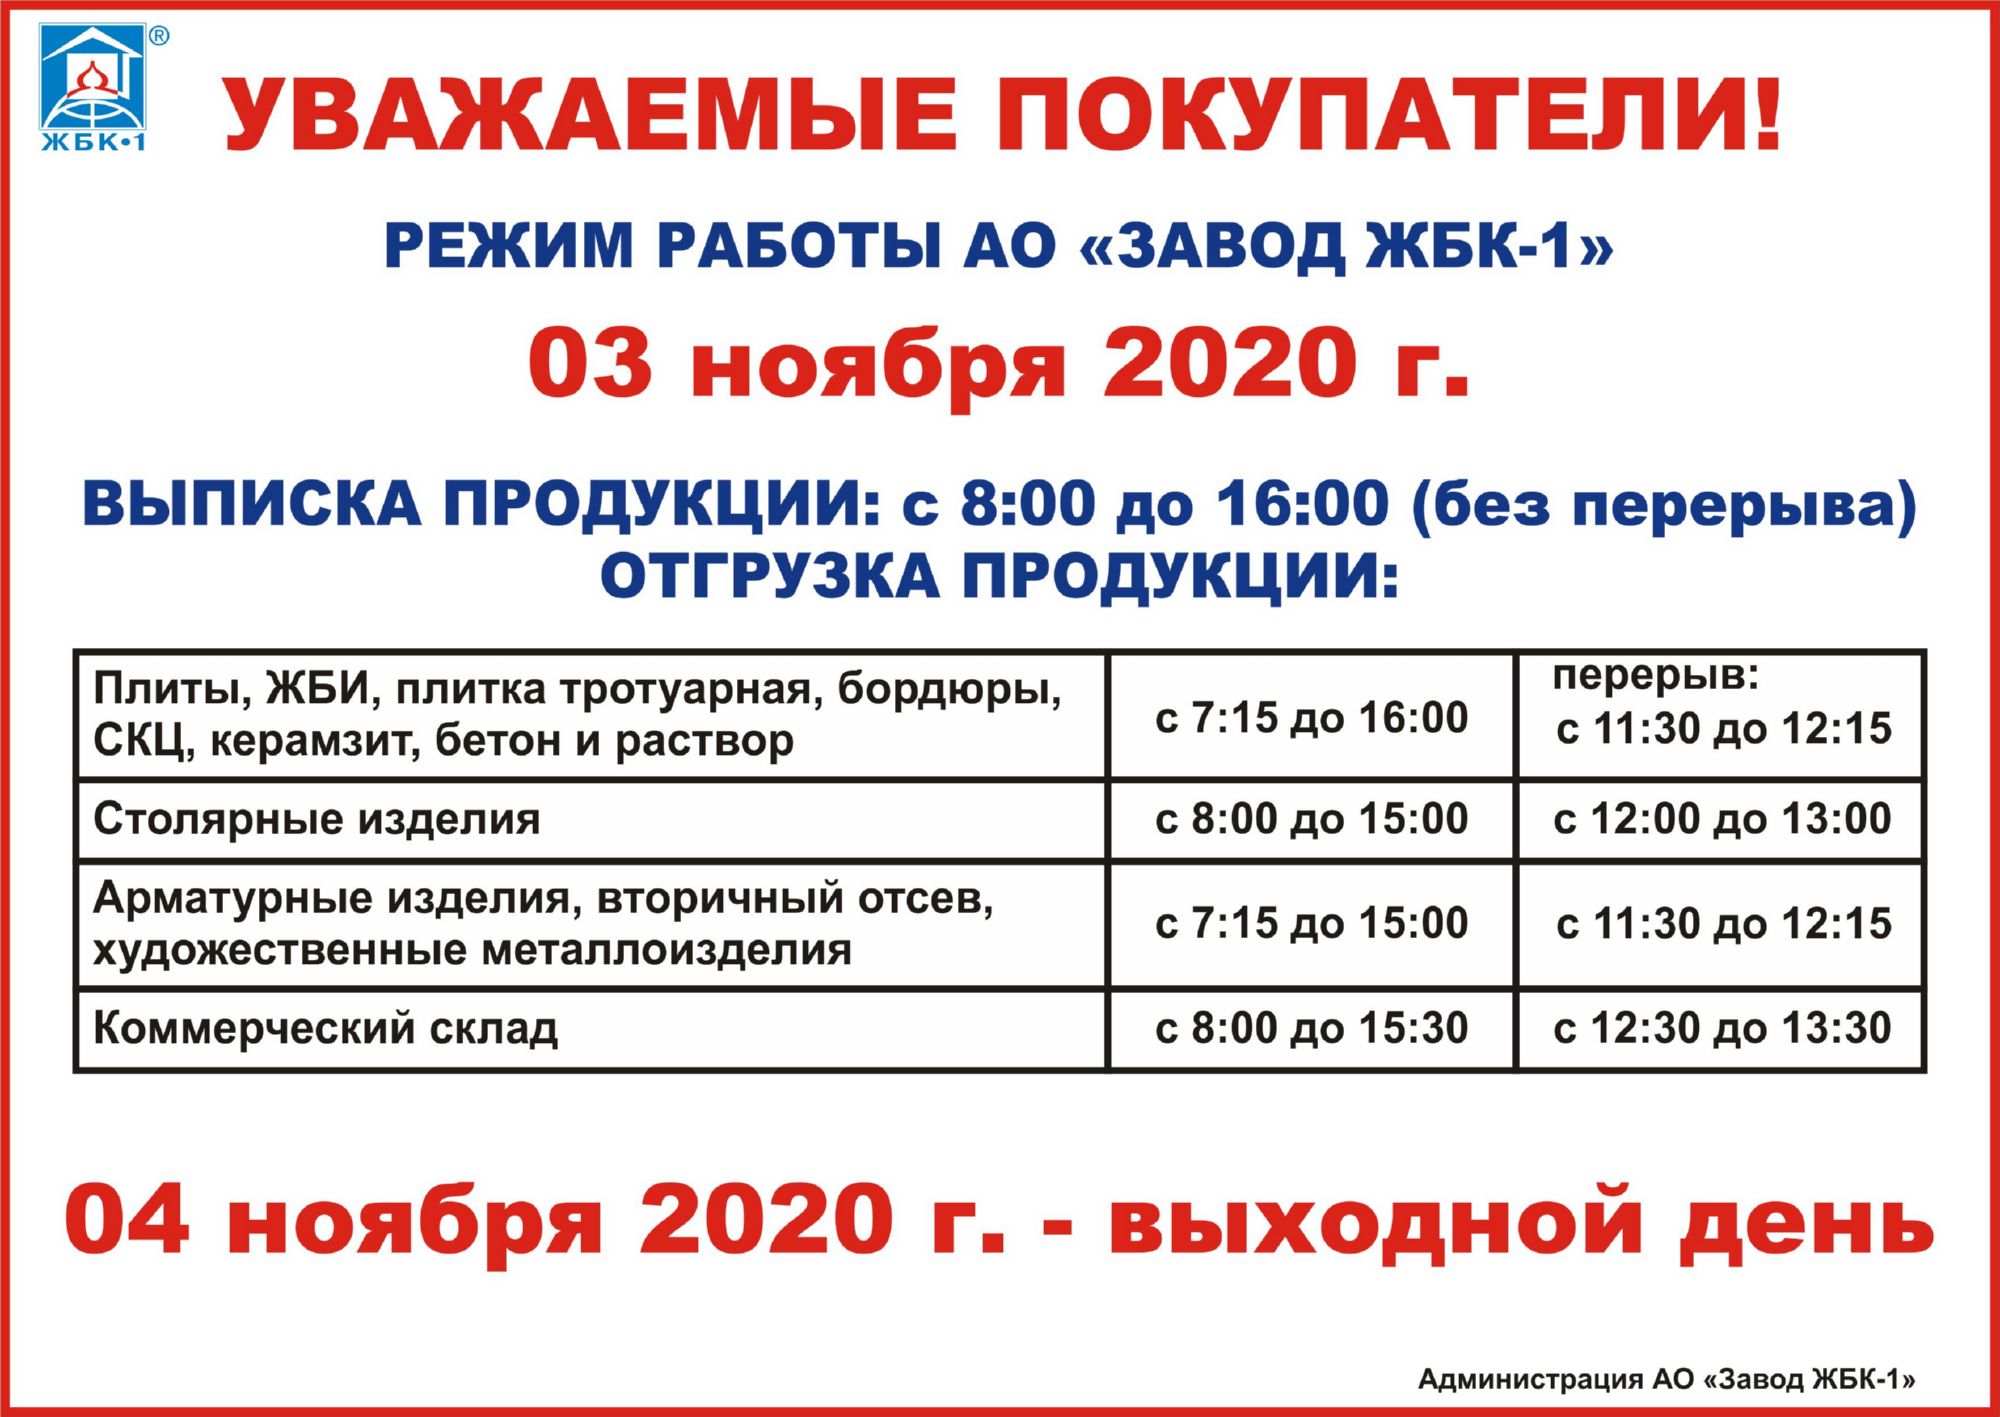 Режим работы АО "Завод ЖБК-1" 3 ноября 2020 г.